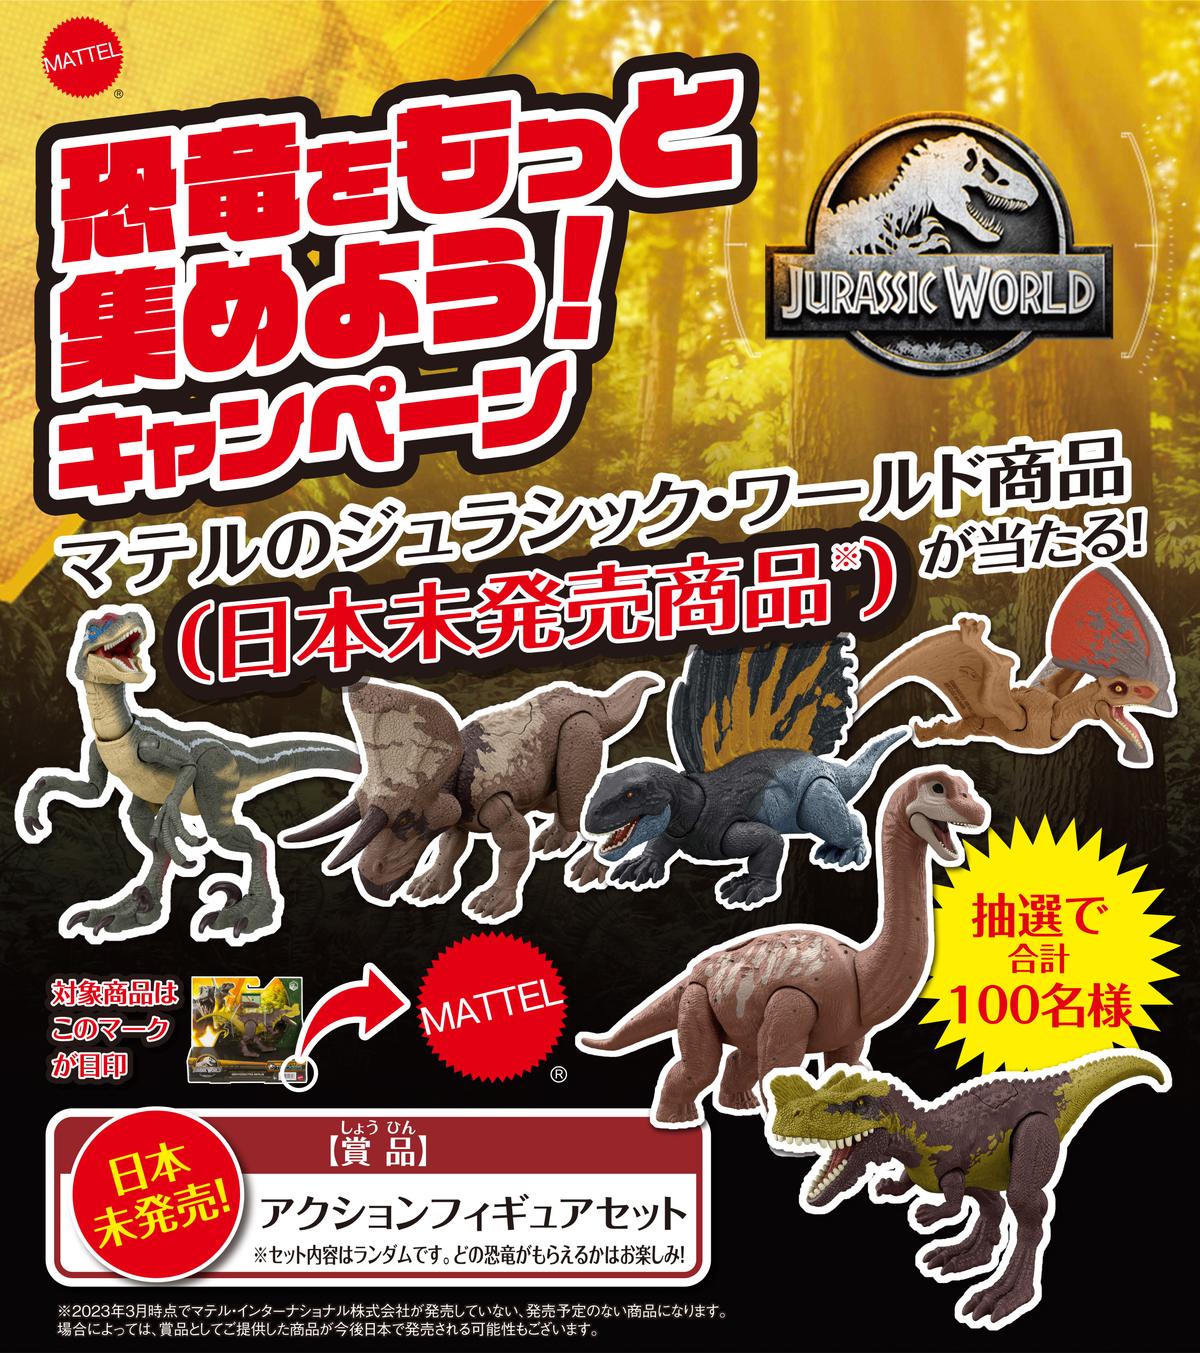 「ジュラシック・ワールド」見た目がリアルなマテルの恐竜フィギュアに光るギミックが加わった新商品が登場！